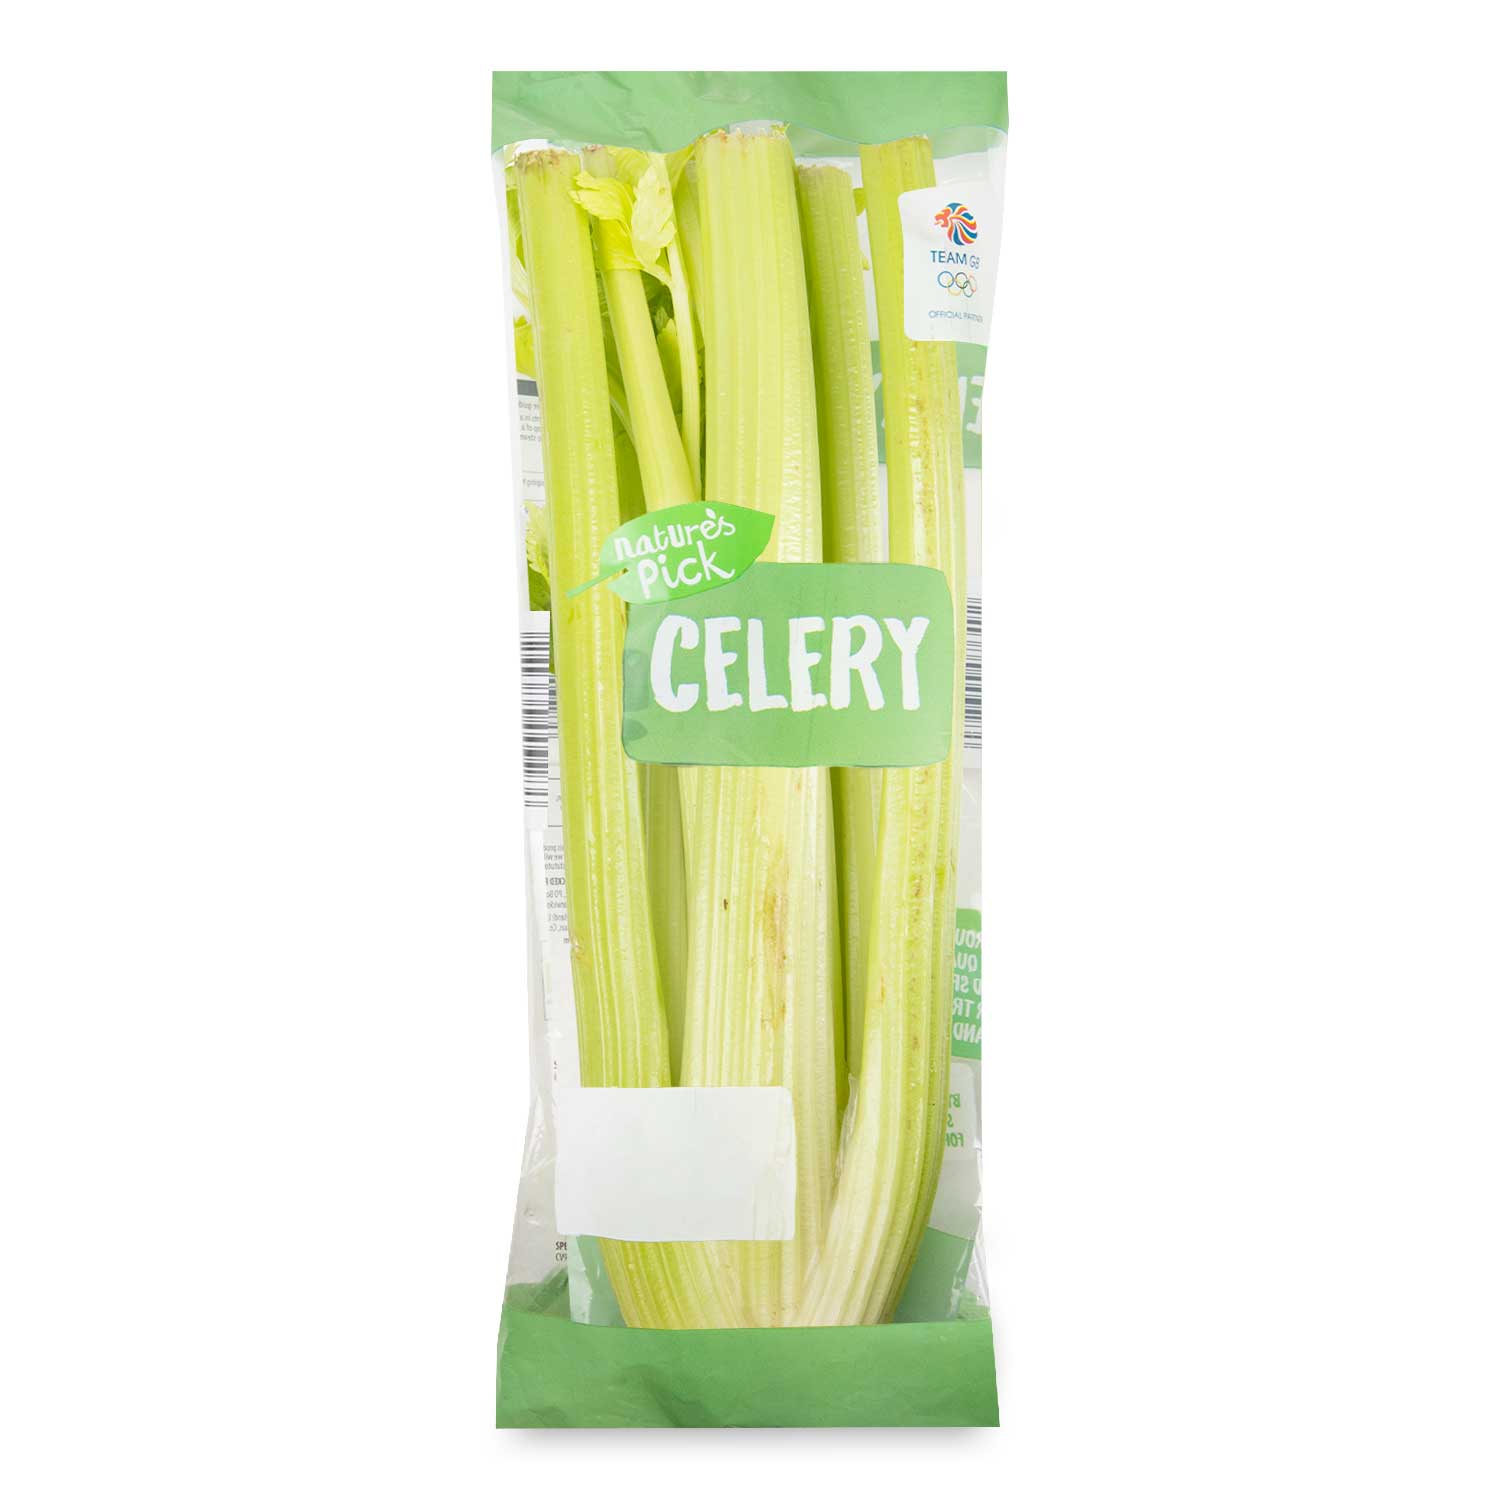 Celery Each Natures Pick Aldiie 